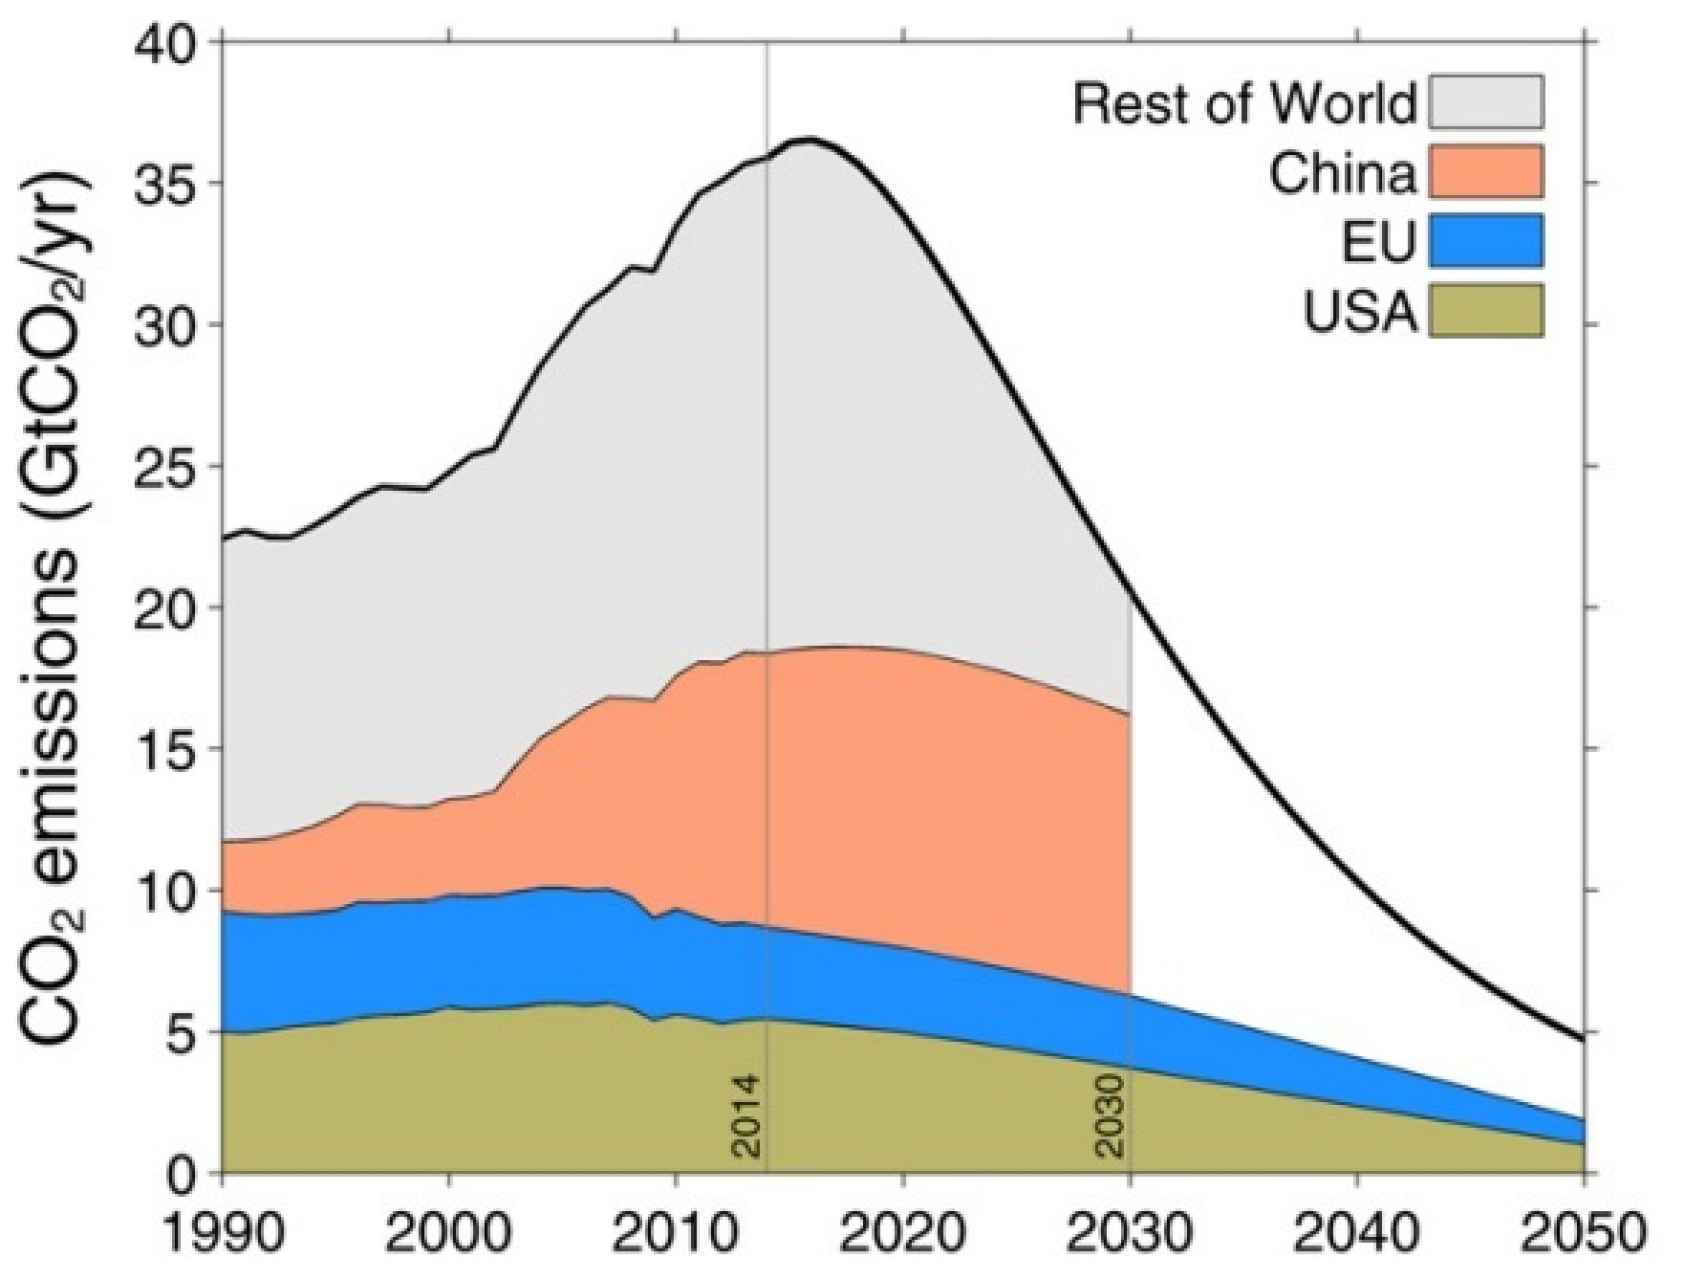 El pico de emisiones debería darse antes de 2020